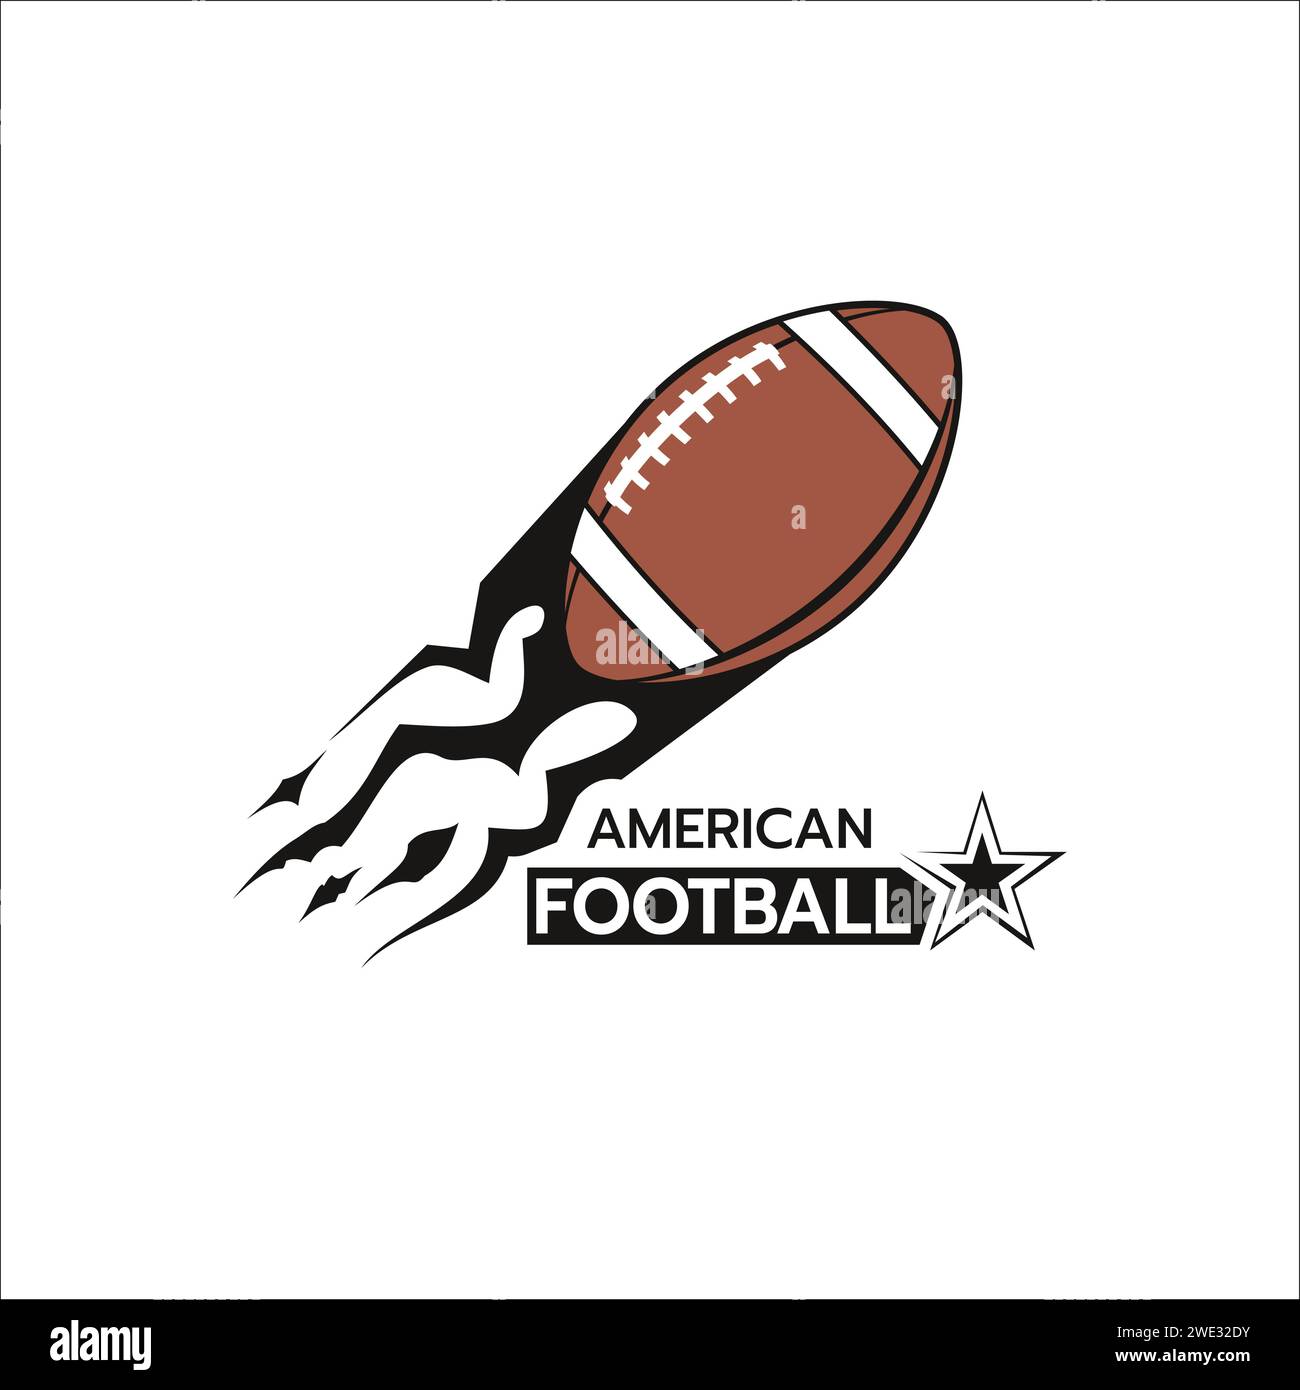 Schön von amerikanischer Fußball-Logo-Vorlage, stilisiertes Bild des Fußball-Logo-Icons Silhouette auf weißem Hintergrund Vektor-Illustration Stock Vektor